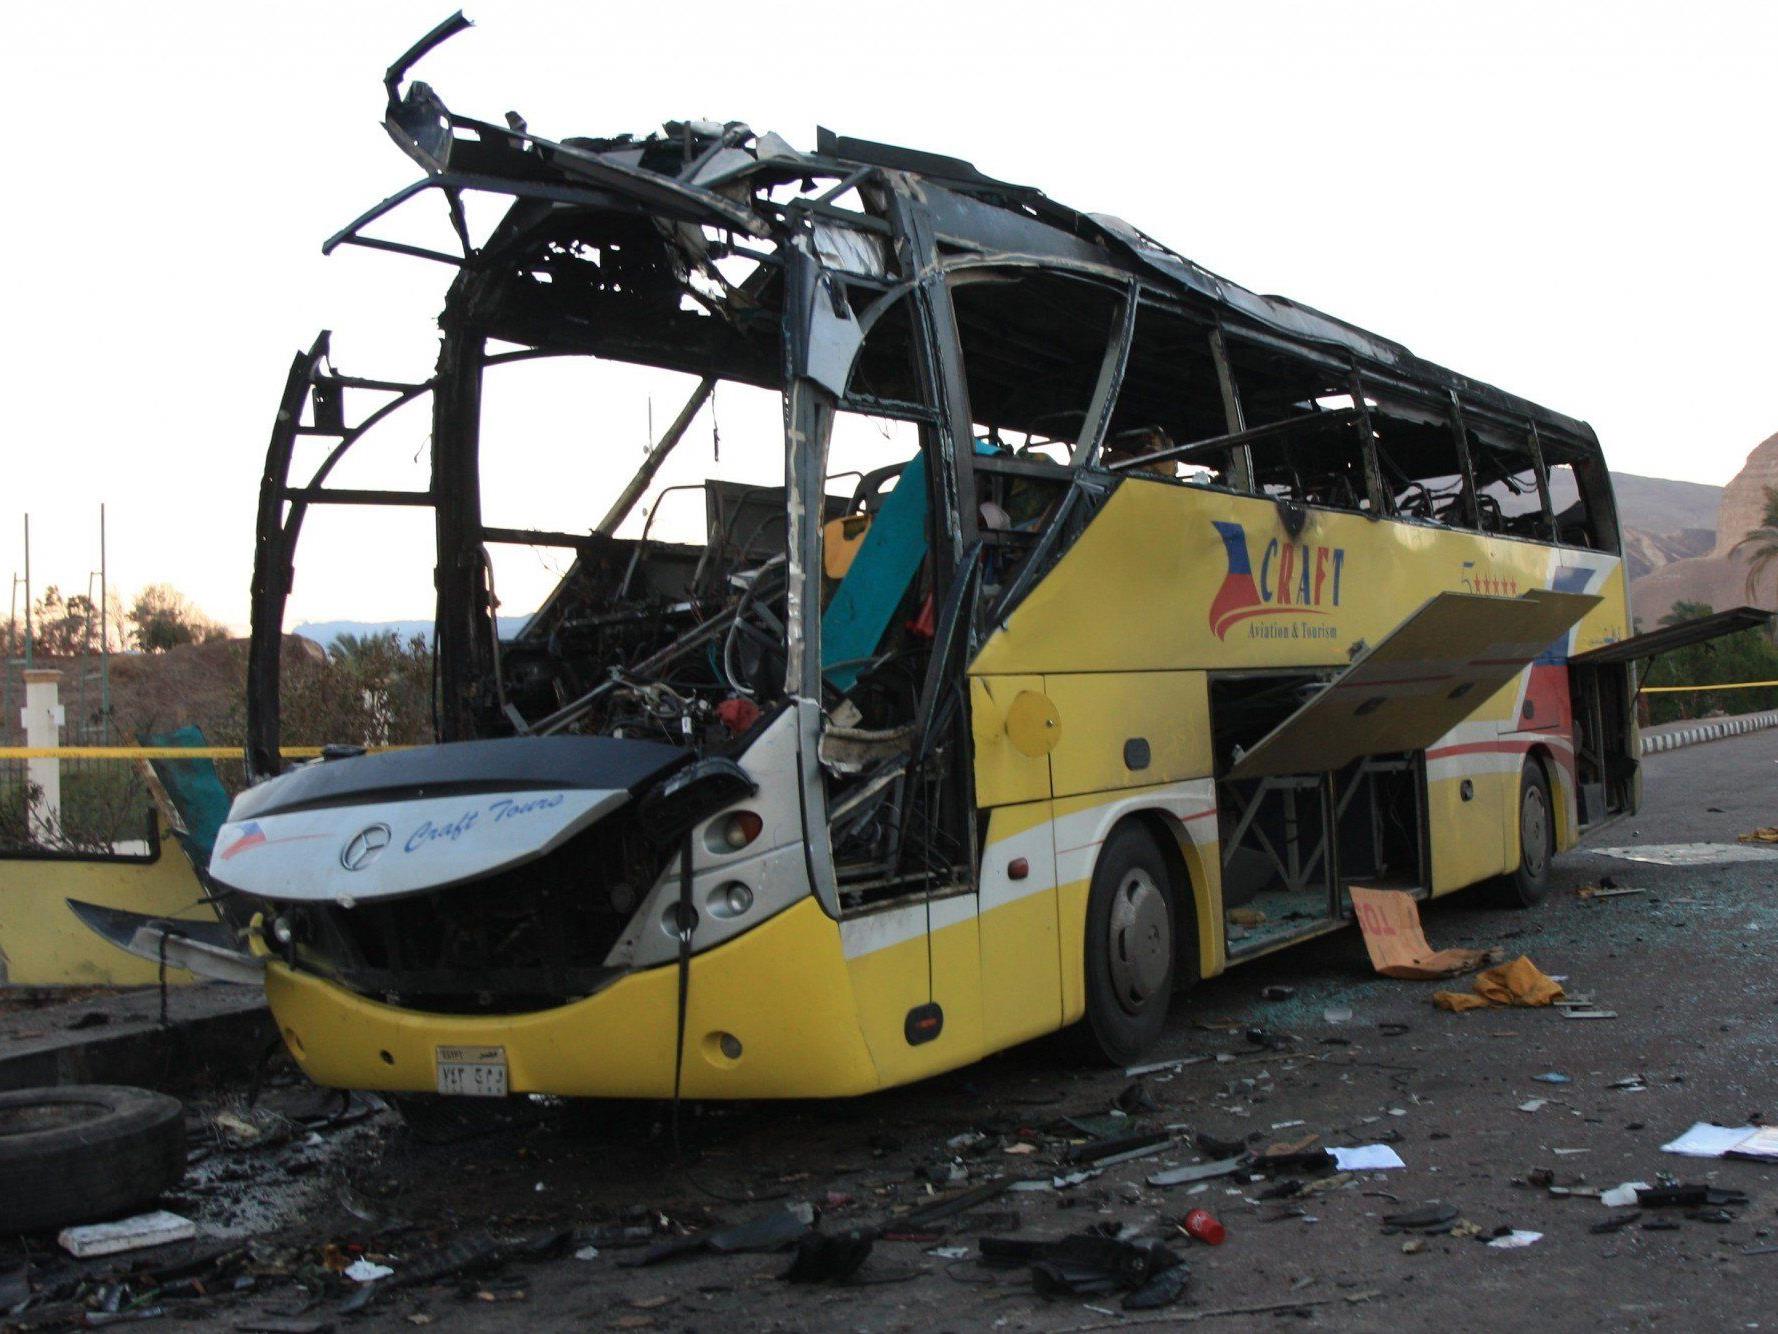 Die Islamistengruppe Ansar Beit al-Maqdis bekannte sich zu den Anschlägen auf einen Touristenbus.